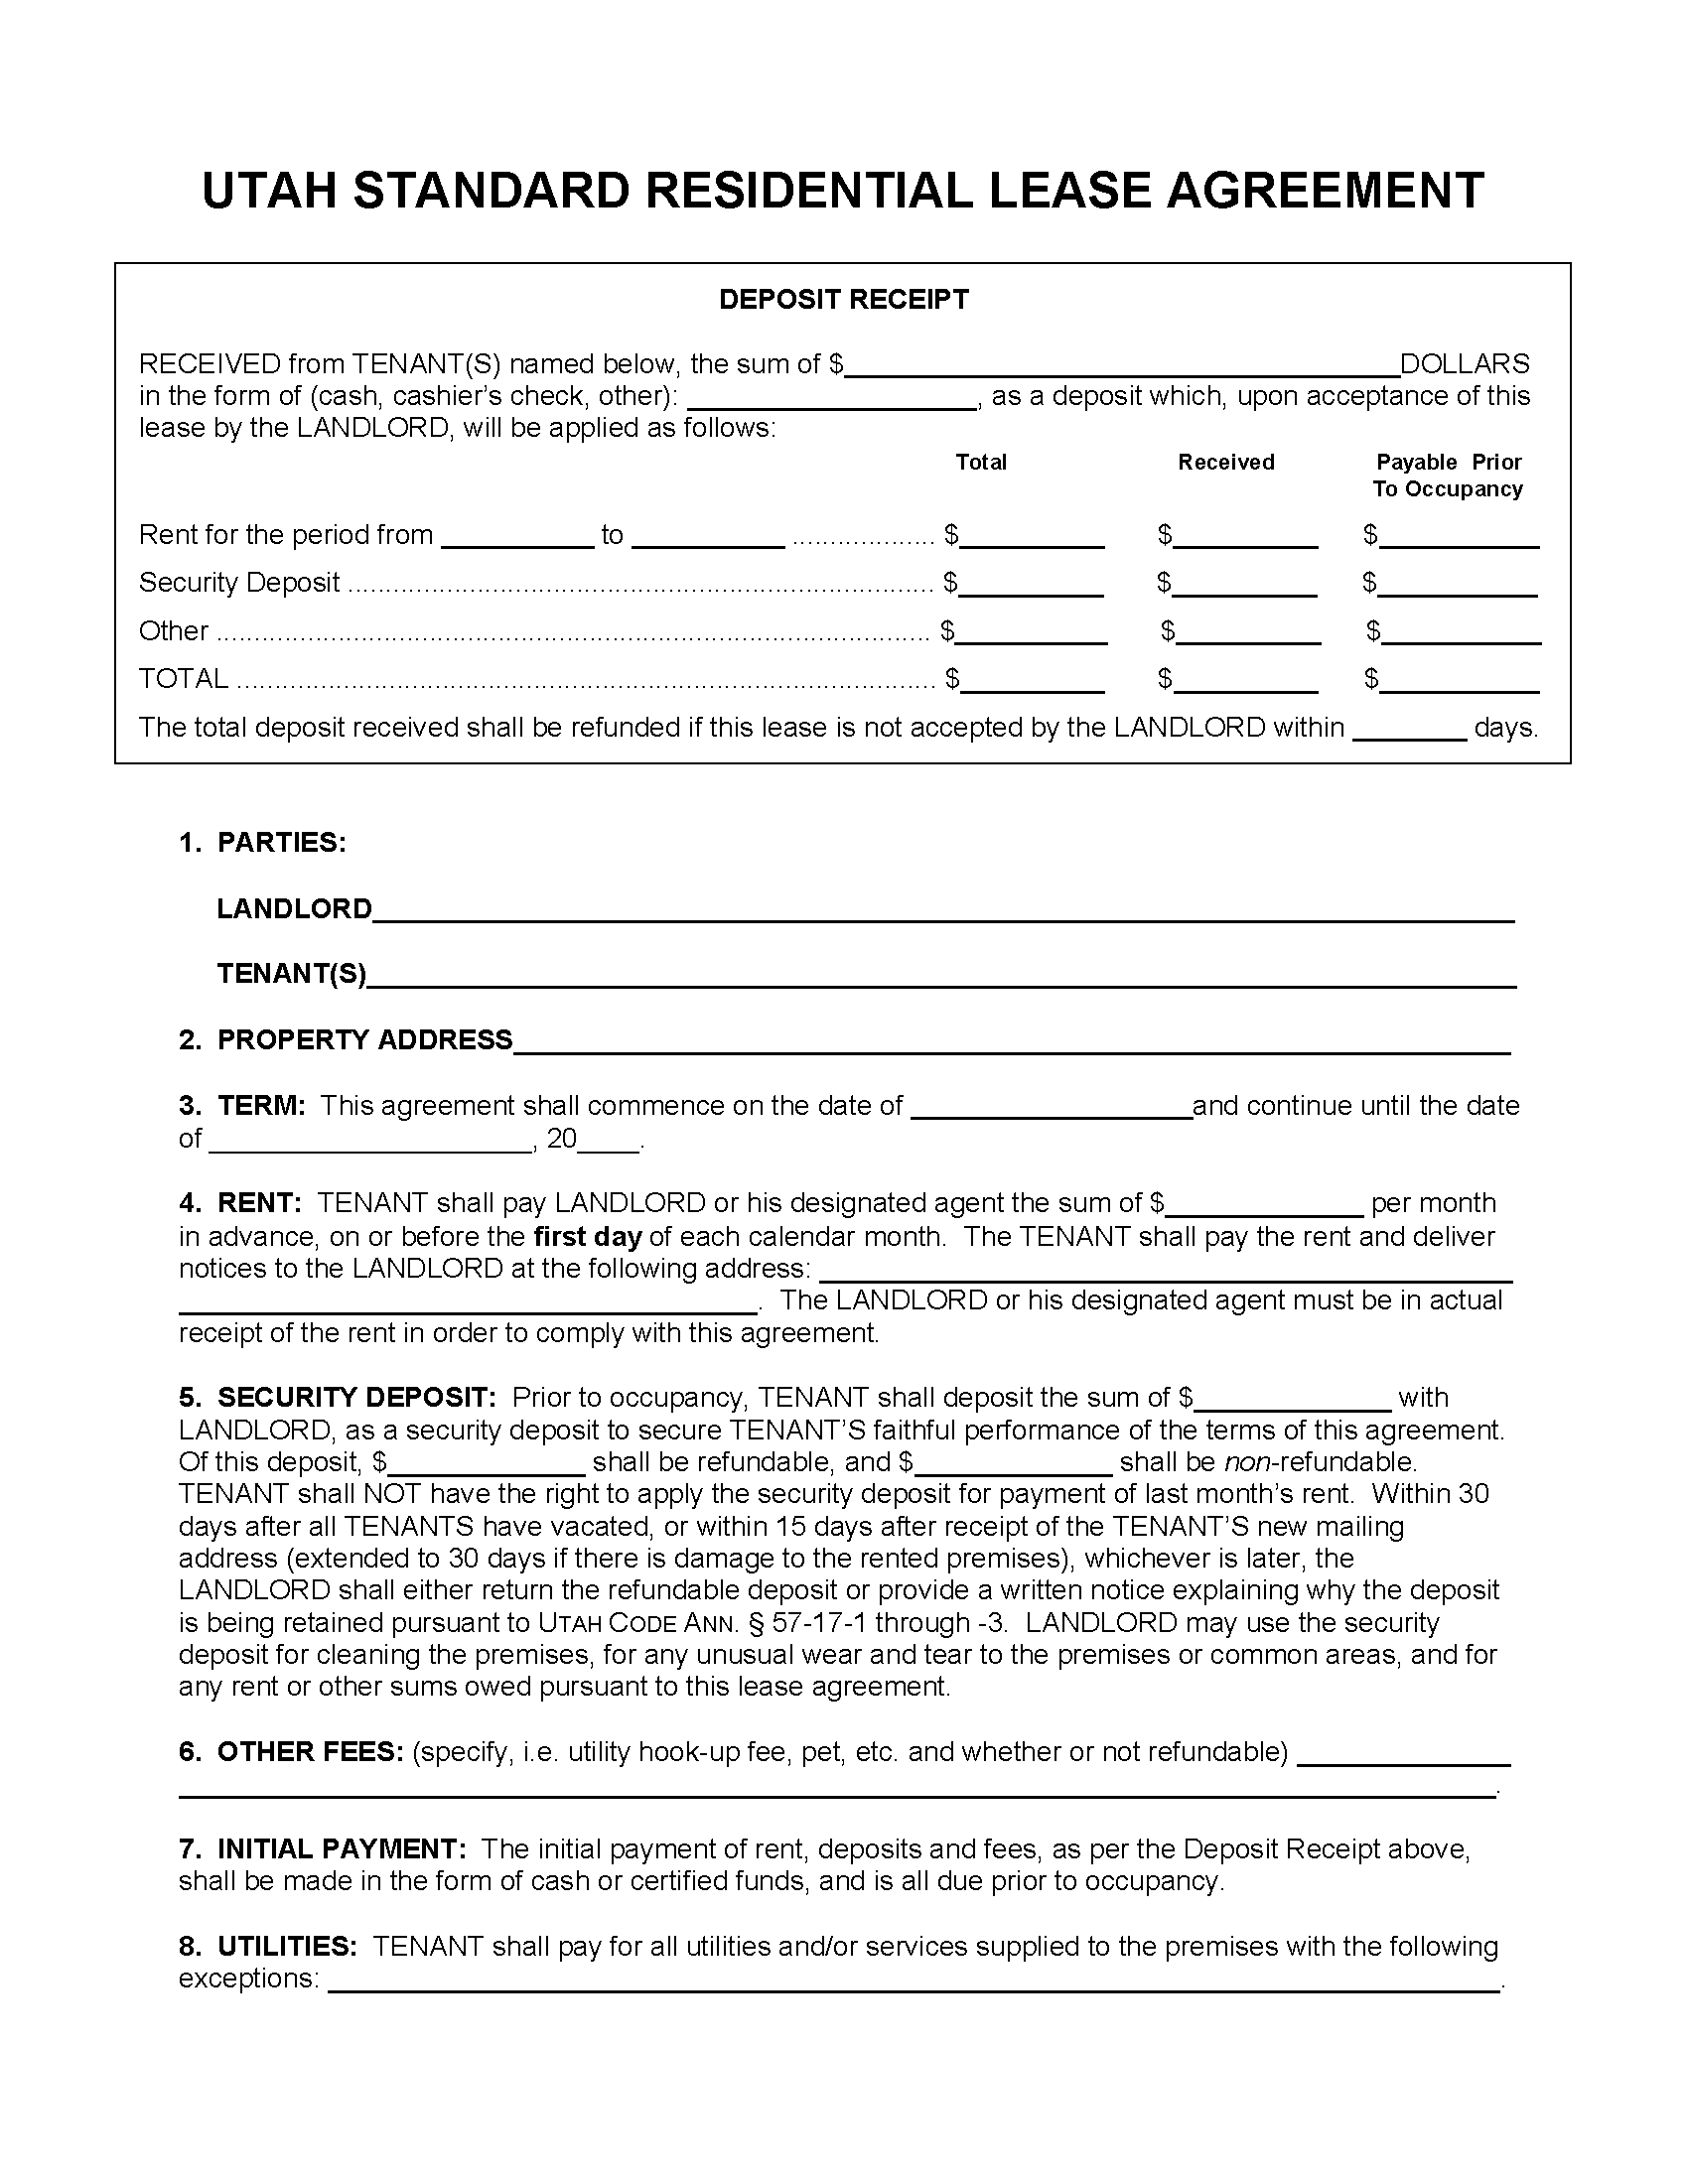 Utah Standard Residential Lease Agreement PDF MS Word Free 